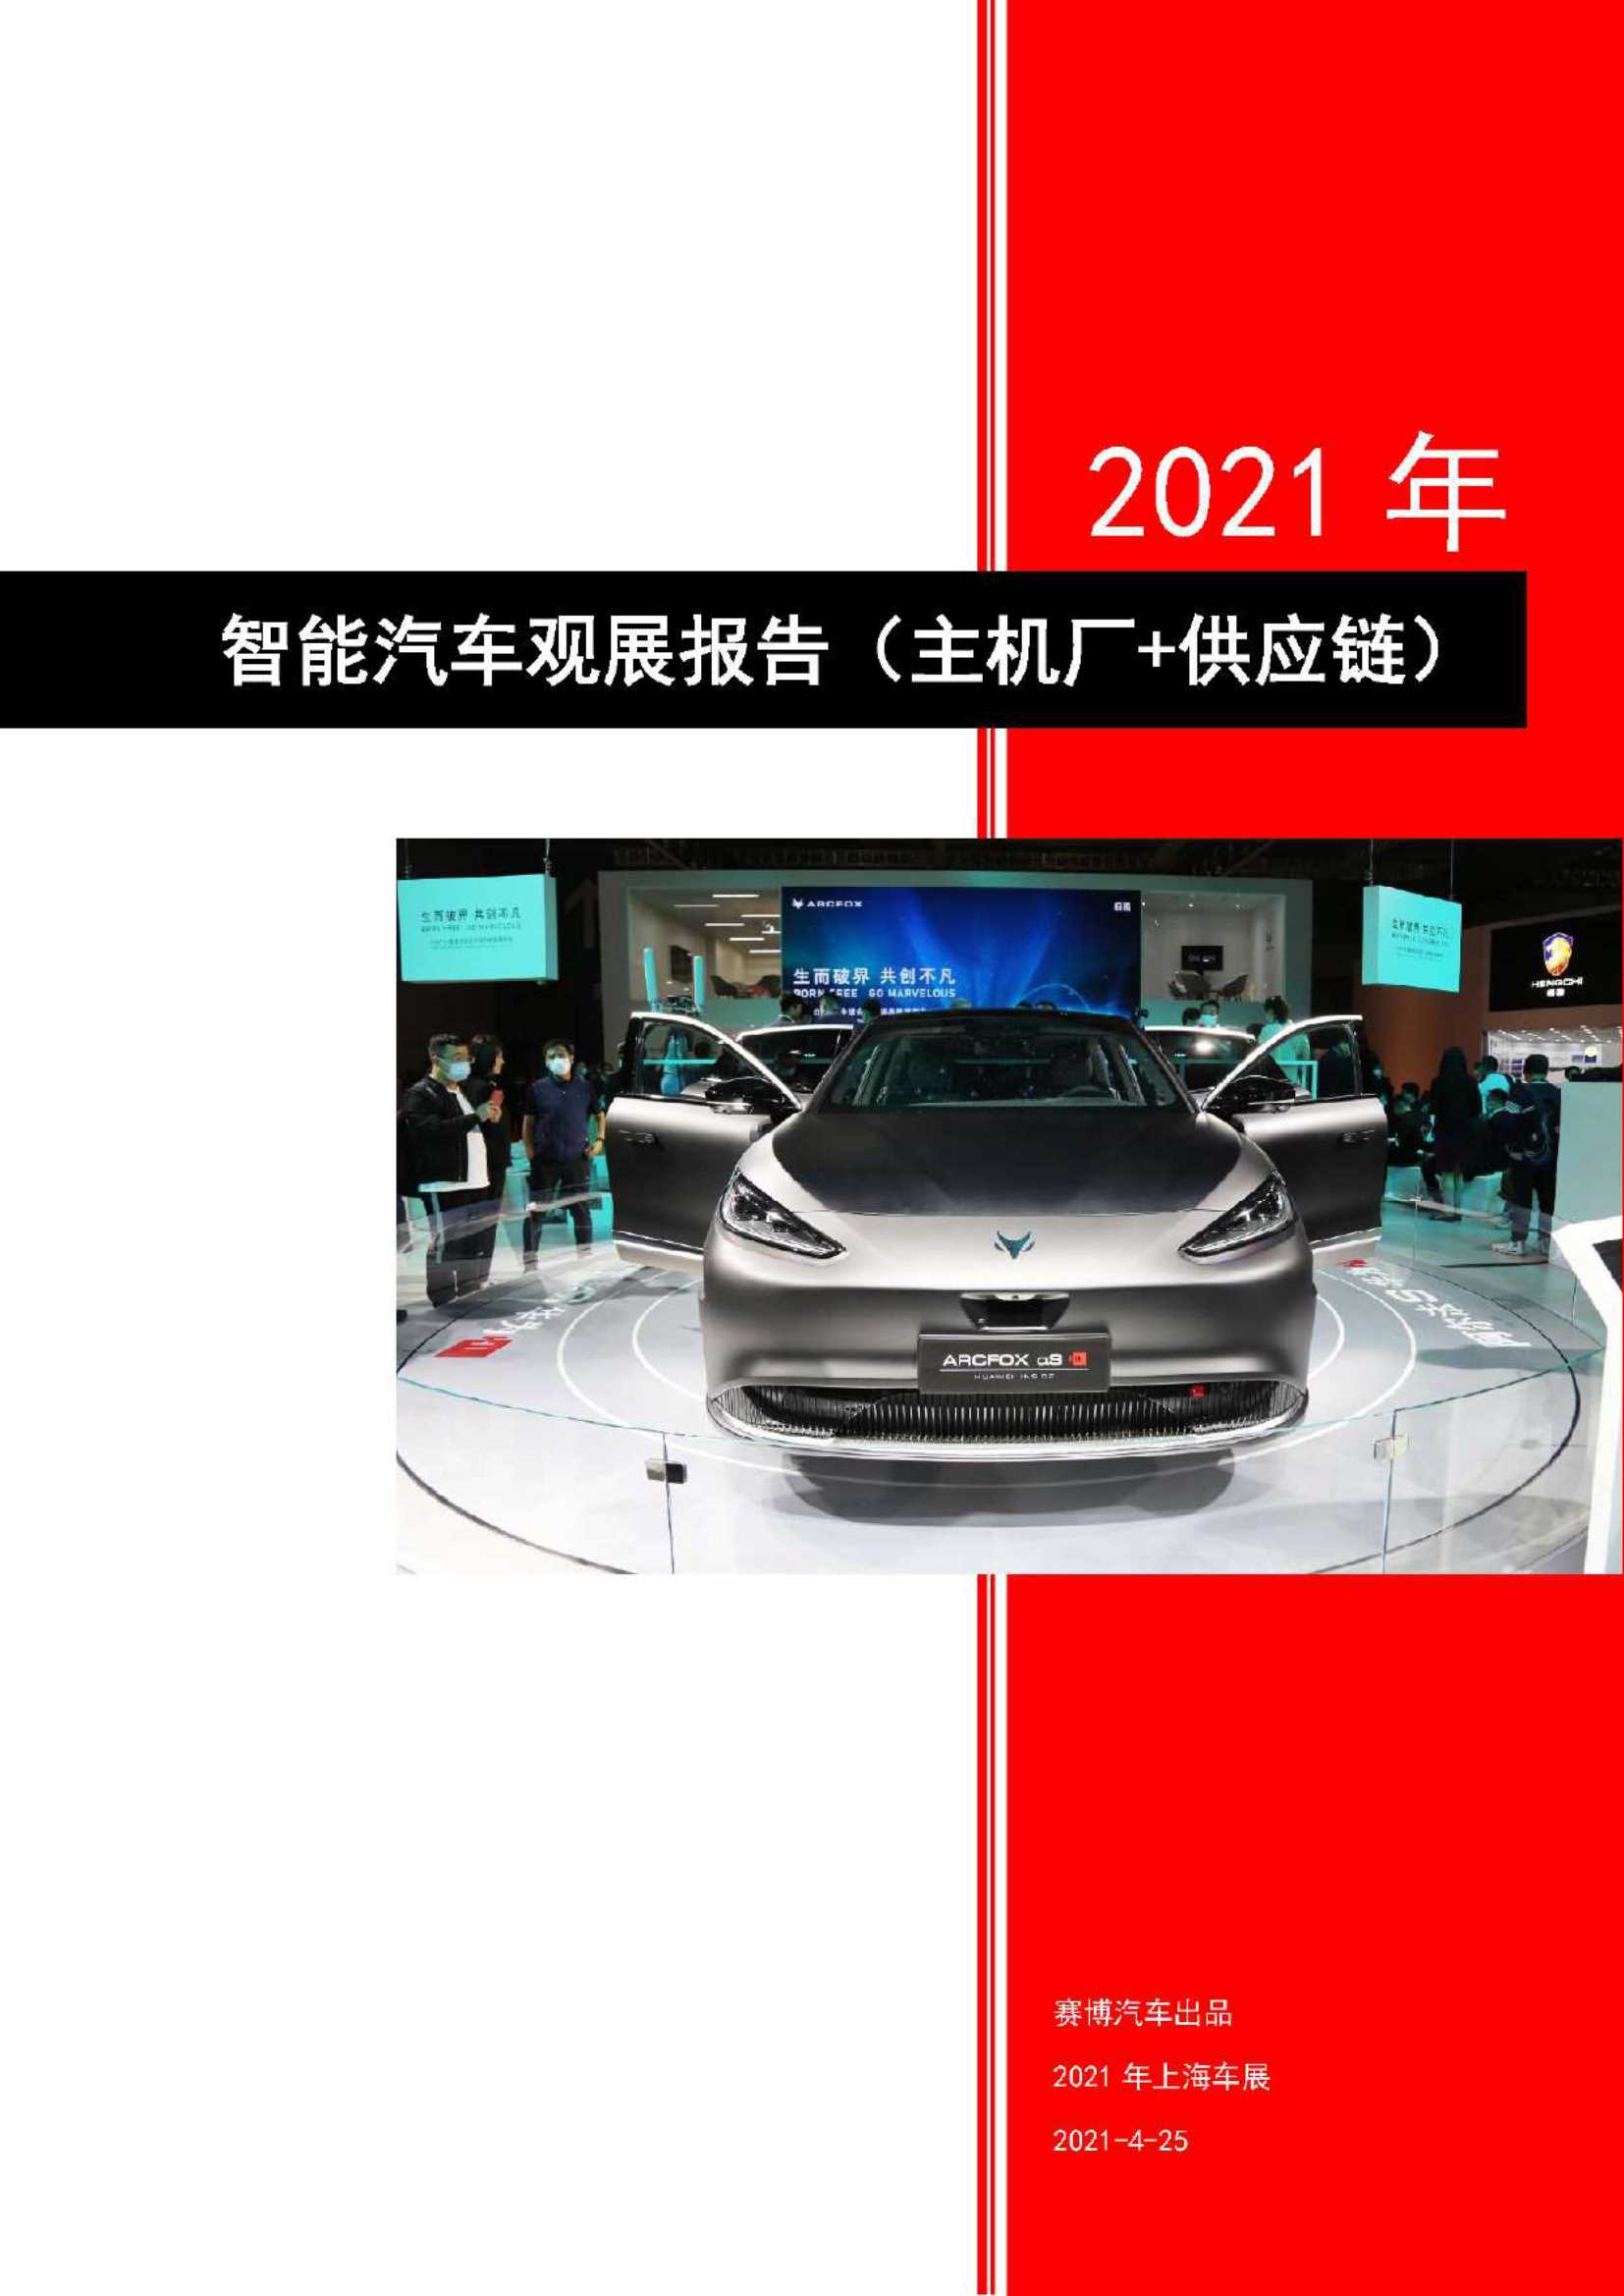 赛博汽车-2021上海车展智能汽车观展报告-2021.04-26页